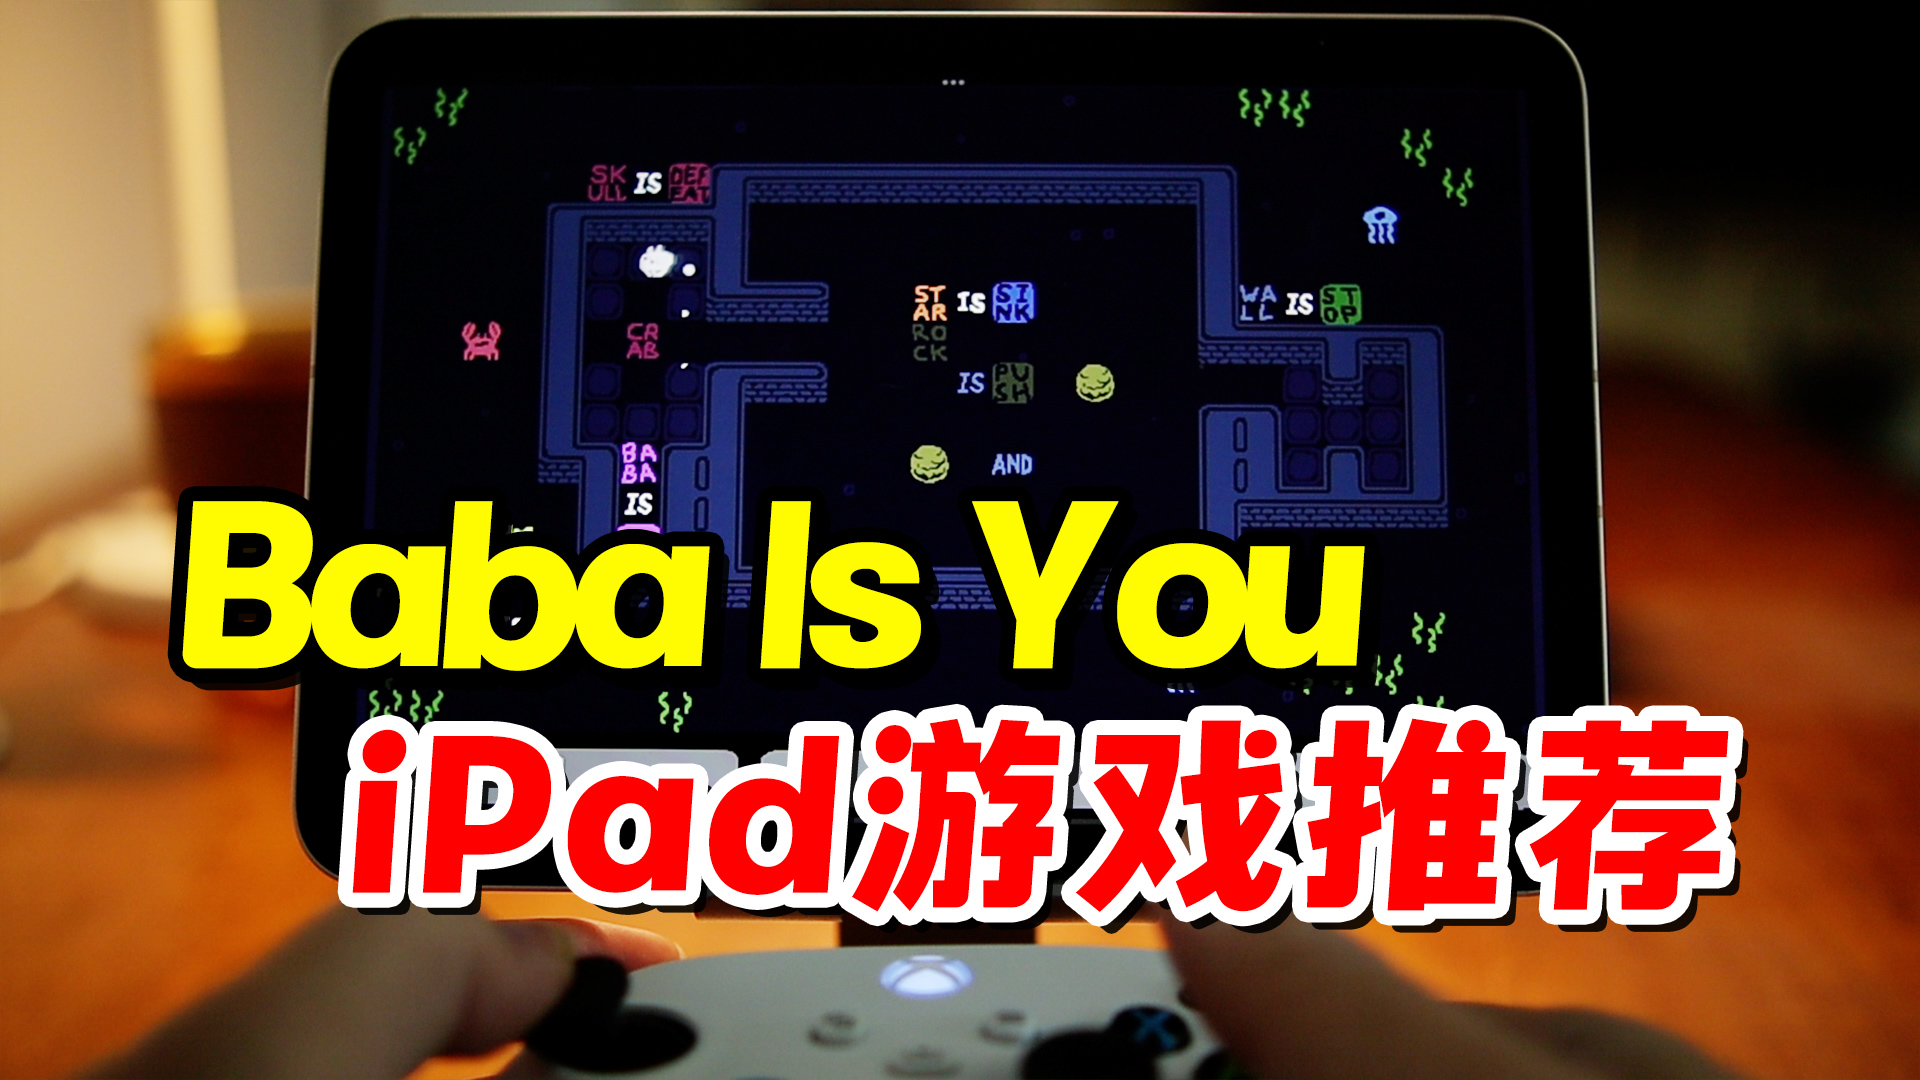 iPad高品质游戏推荐之，Baba is you